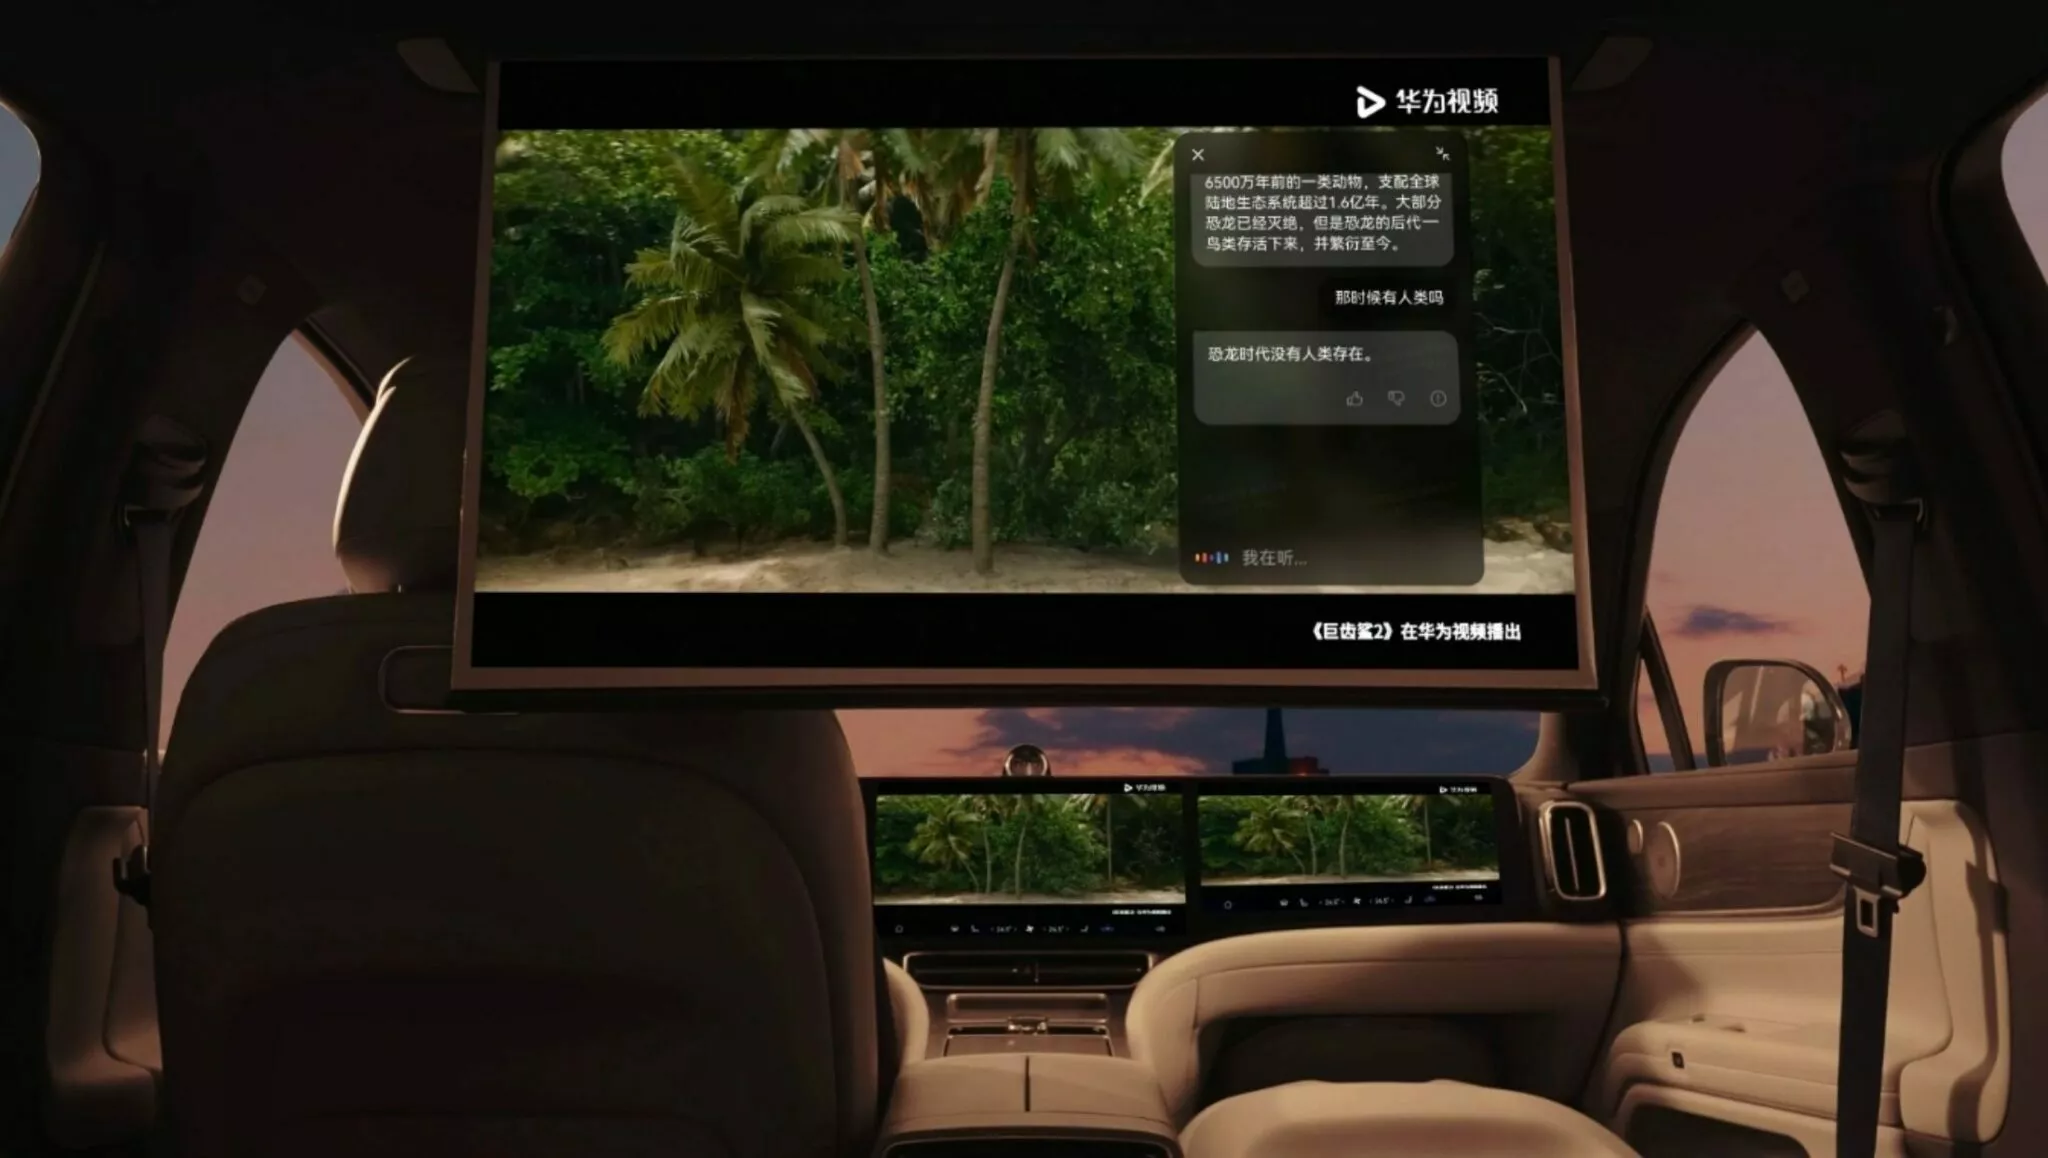 شركة هواوي تكشف عن سيارة SUV كهربائية فاخرة بشاشة سينمائية وقوة 530 حصان 19